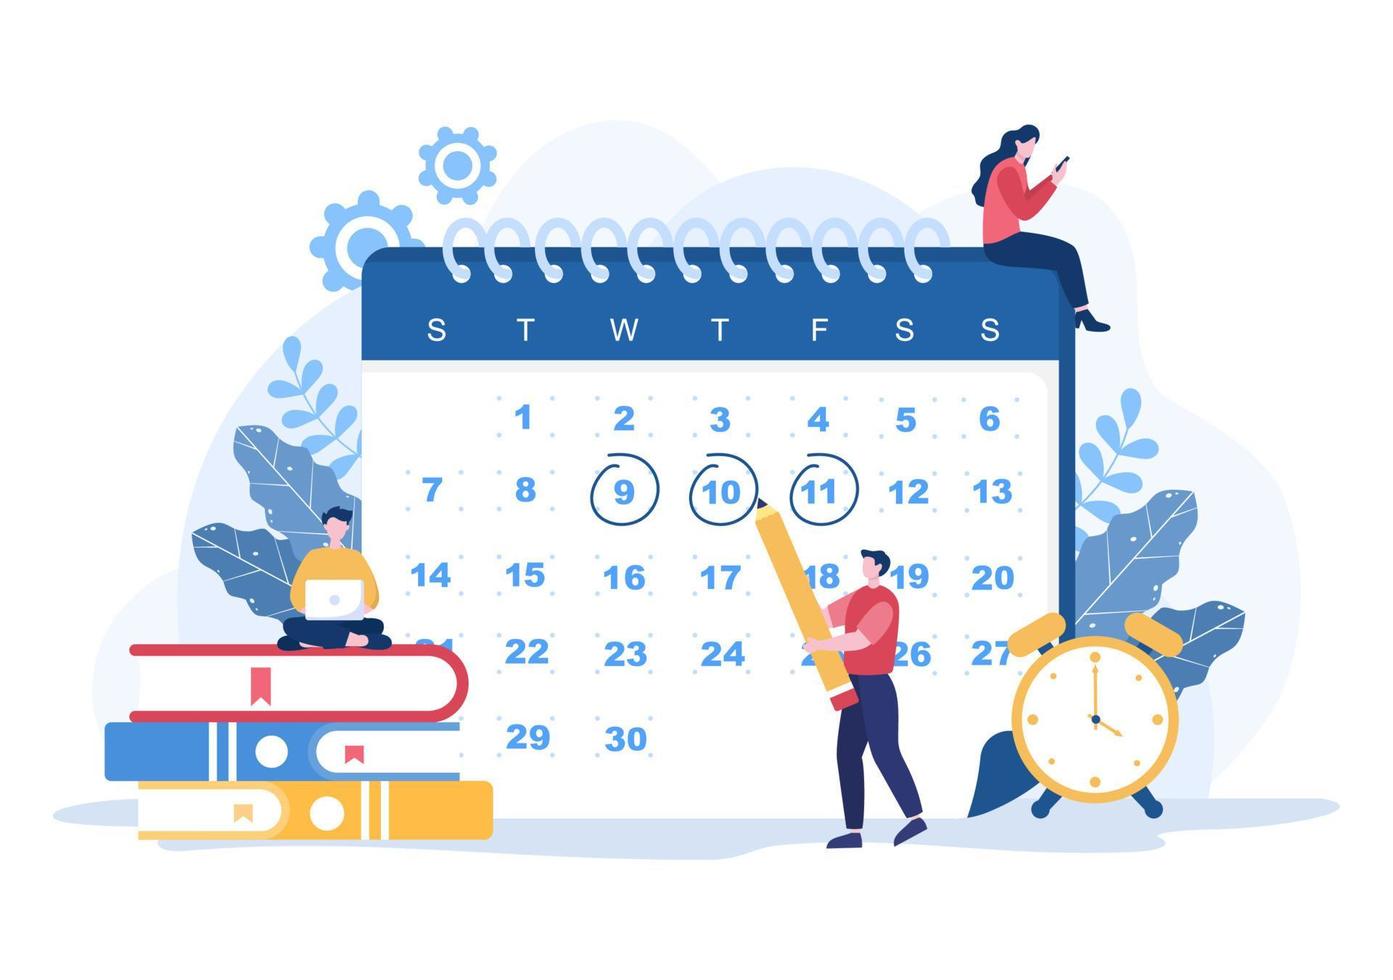 planeringsschema eller tidshantering med kalenderaffärsmöte, aktiviteter och evenemang som organiserar processkontorsarbete. bakgrund vektor illustration